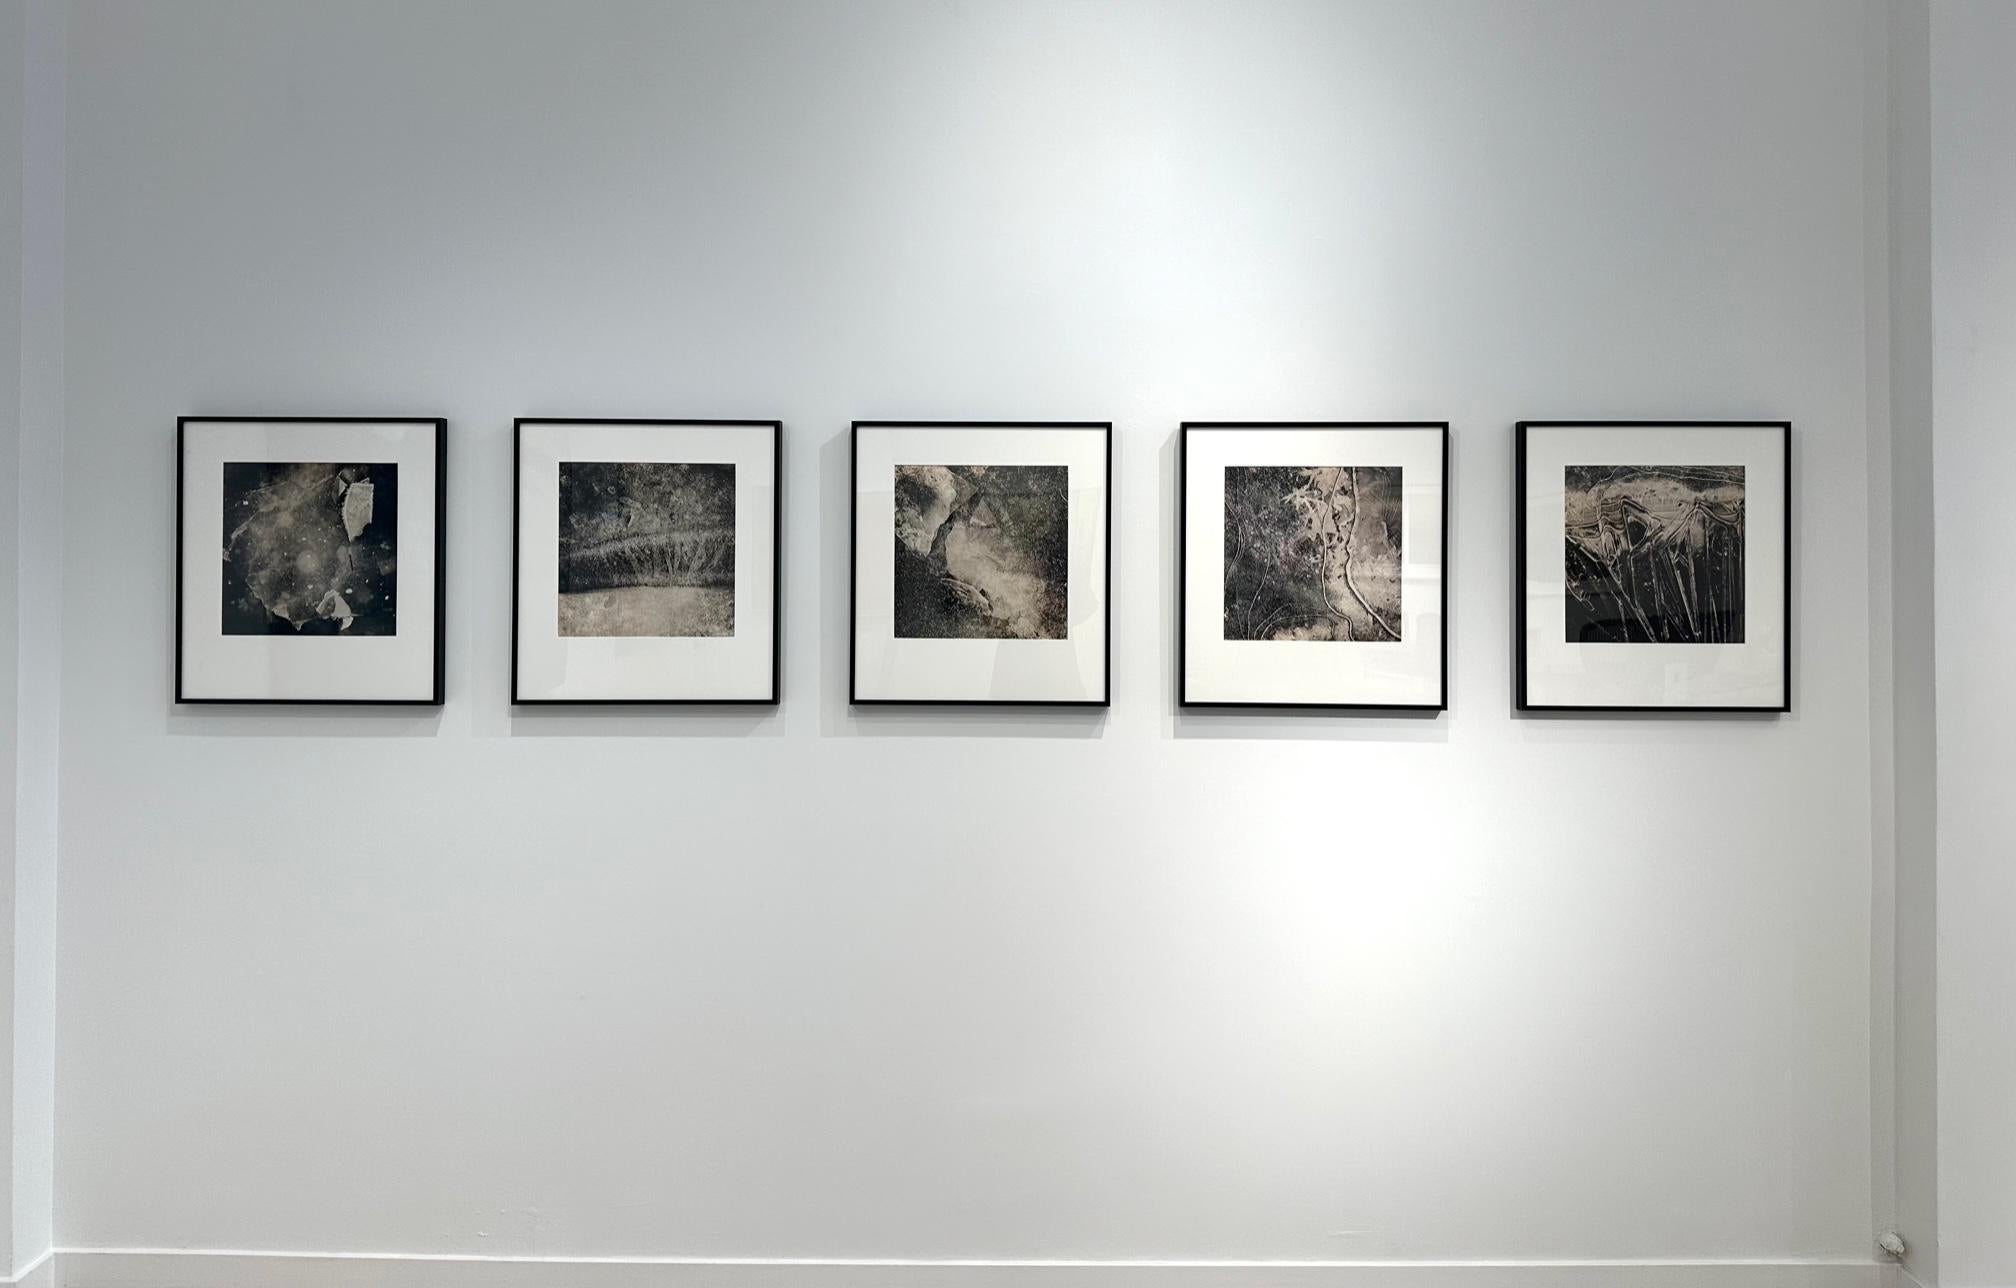 La série de photographies en noir et blanc « Ice Portals » d'Alyson Belcher dépeint un hiver exceptionnellement froid dans le Nord-Ouest.  Ces photographies sont des enregistrements des formations de glace uniques que l'artiste a découvertes lors de